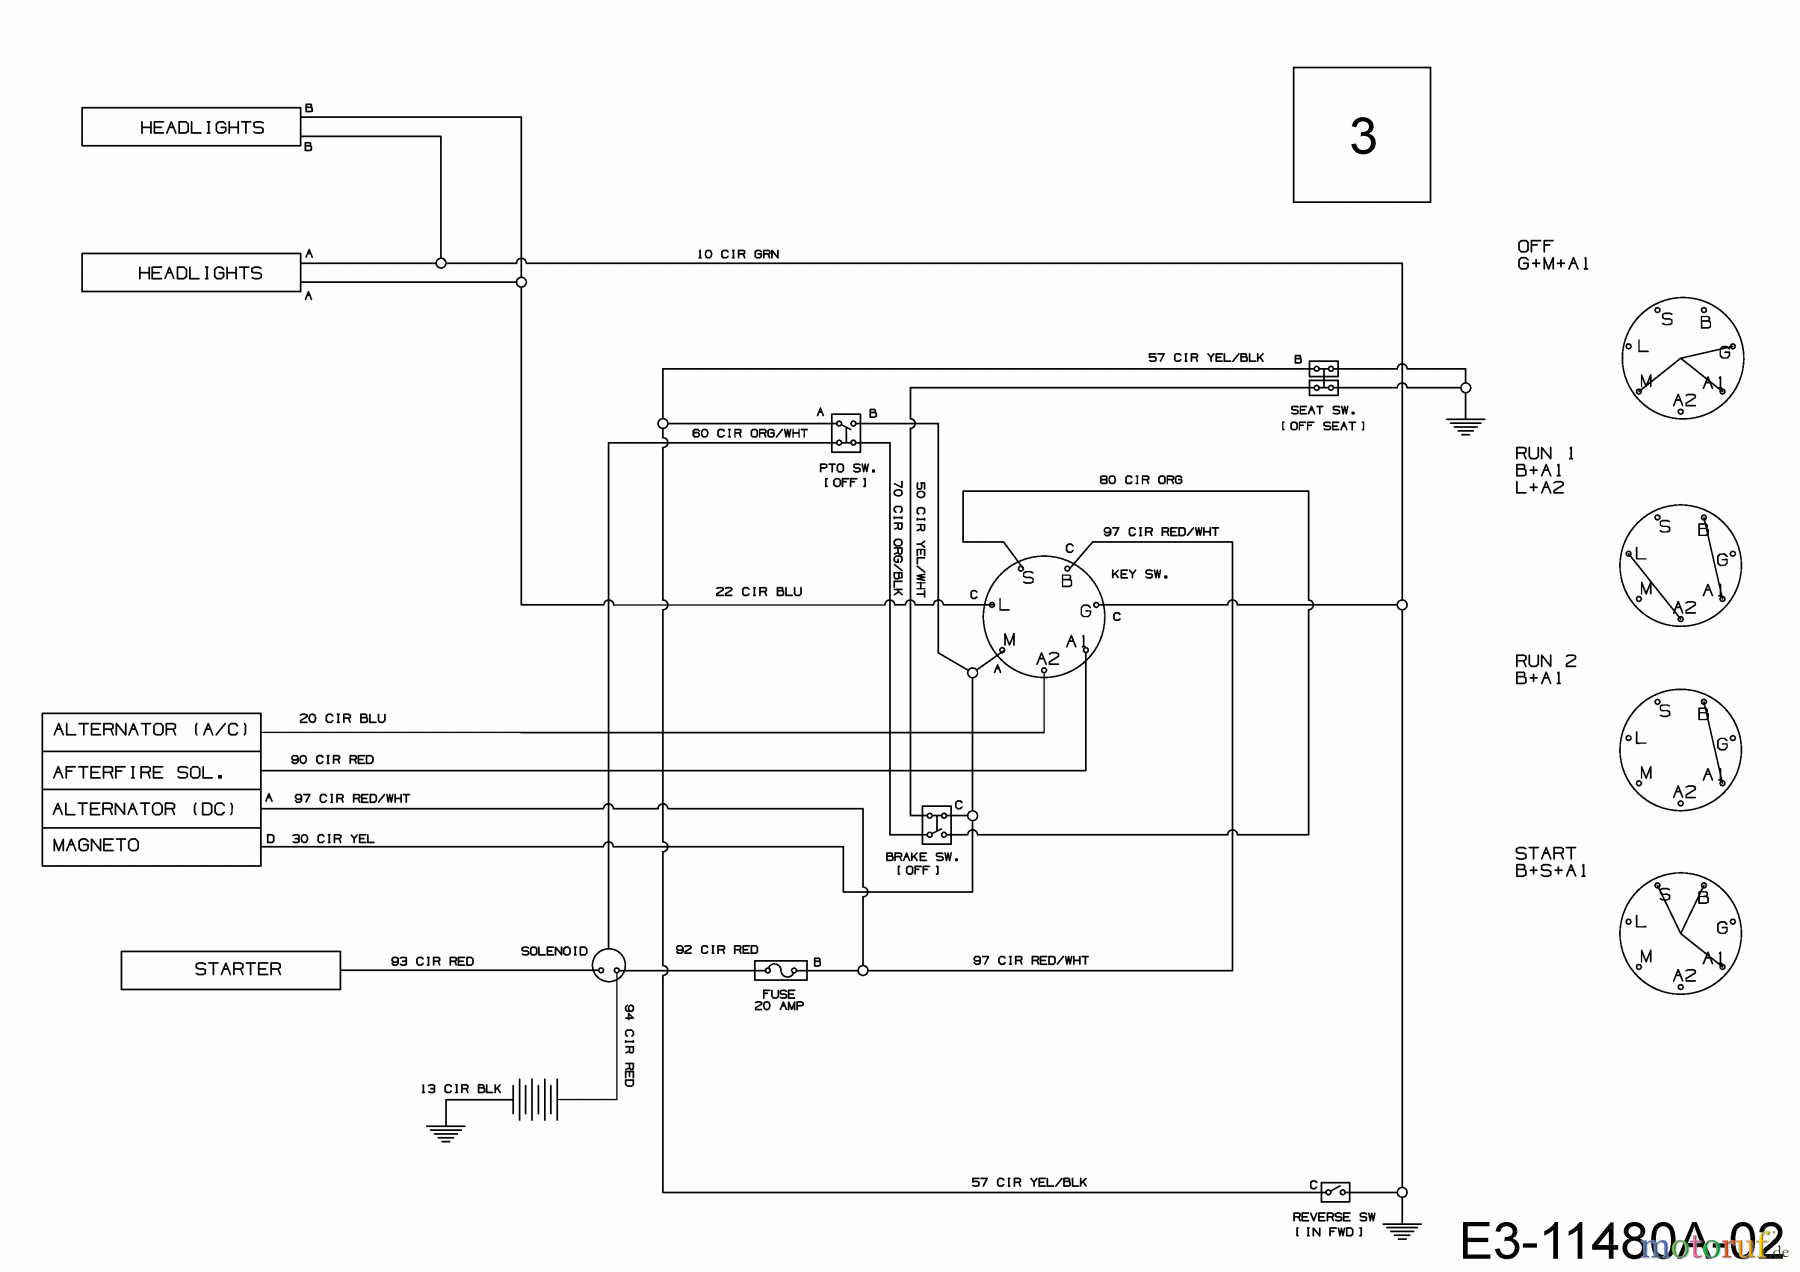  Tigara Lawn tractors TG 15 / 96 HEM 13BB79KF649 (2021) Wiring diagram